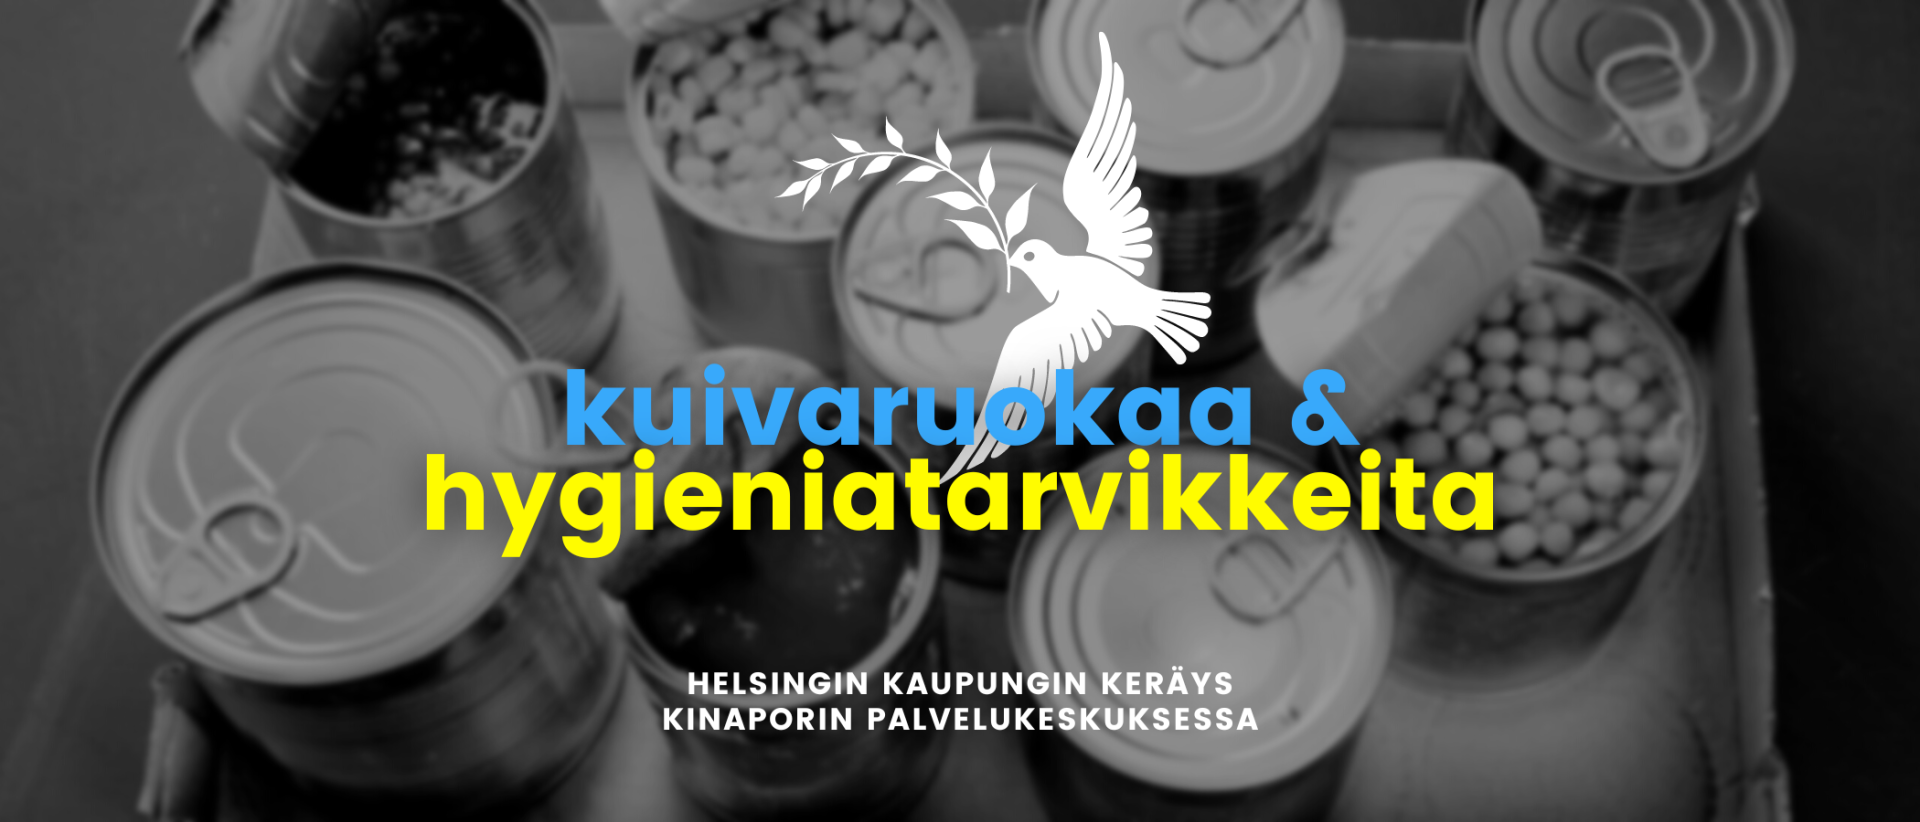 Kuivaruokaa ja hygieniatarvikkeita. Helsingin kaupungin keräys Kinaporin palvelukeskuksessa.